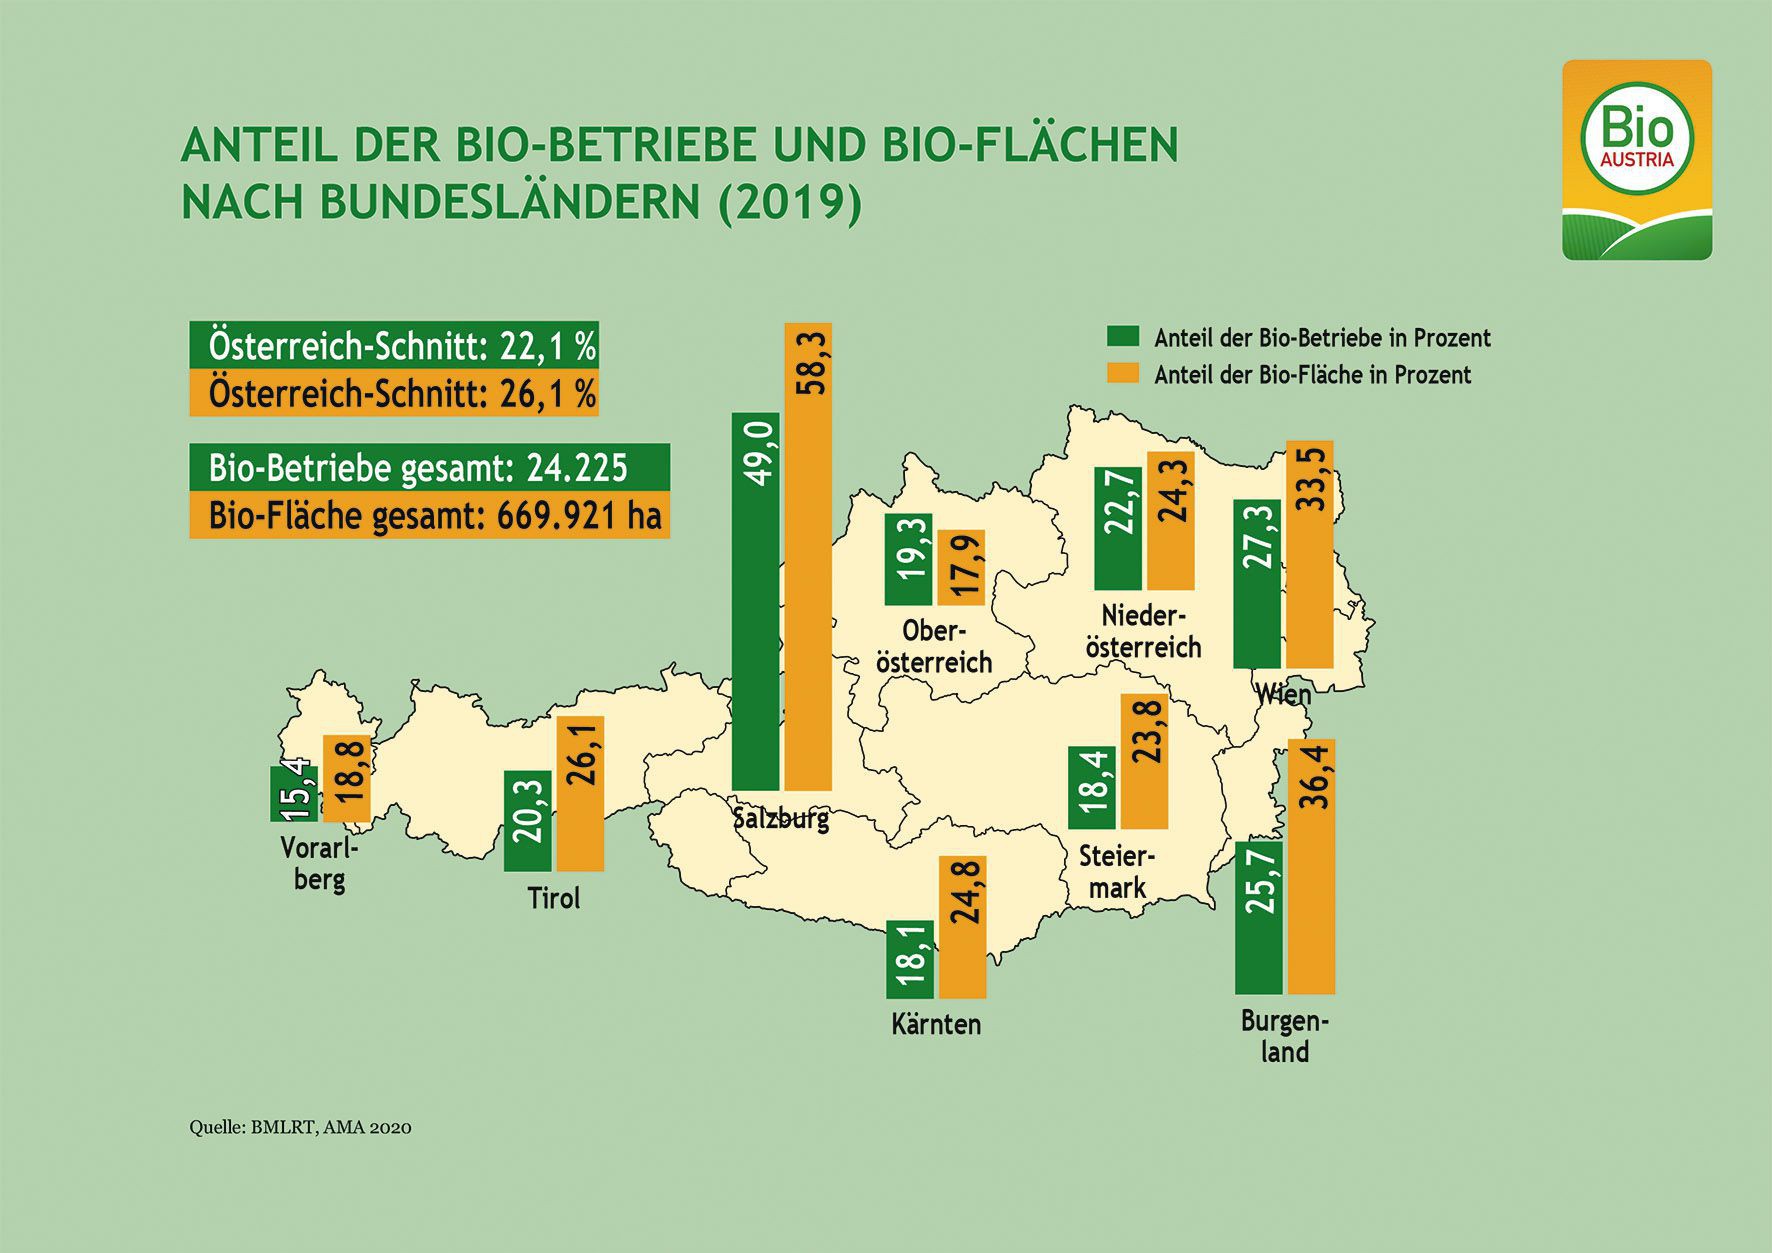 biobundeslaender_0920_c-bio-austria